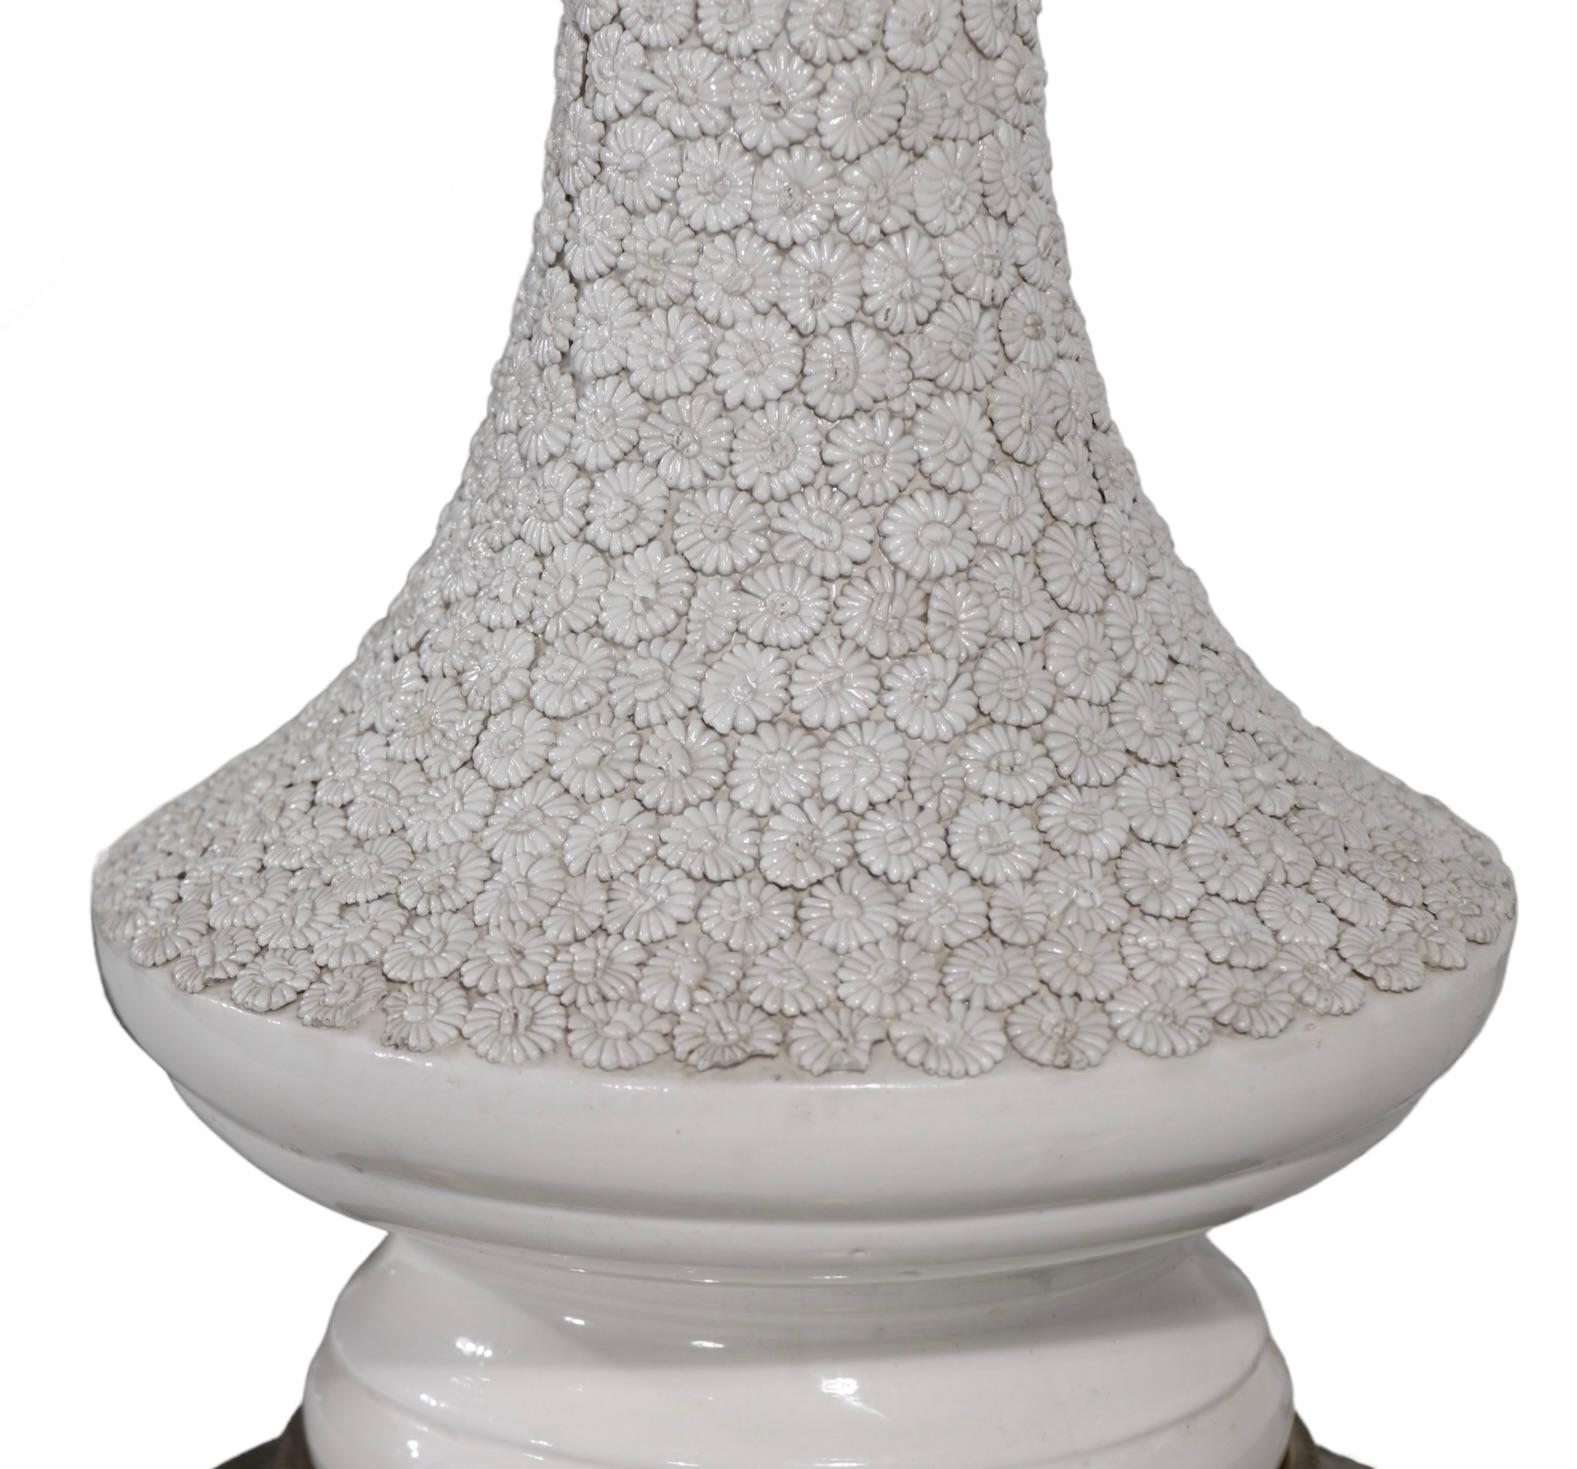 Pr. Decorative Blanc de Chine Style Table Lamps by Paul Hanson c 1960's For Sale 11